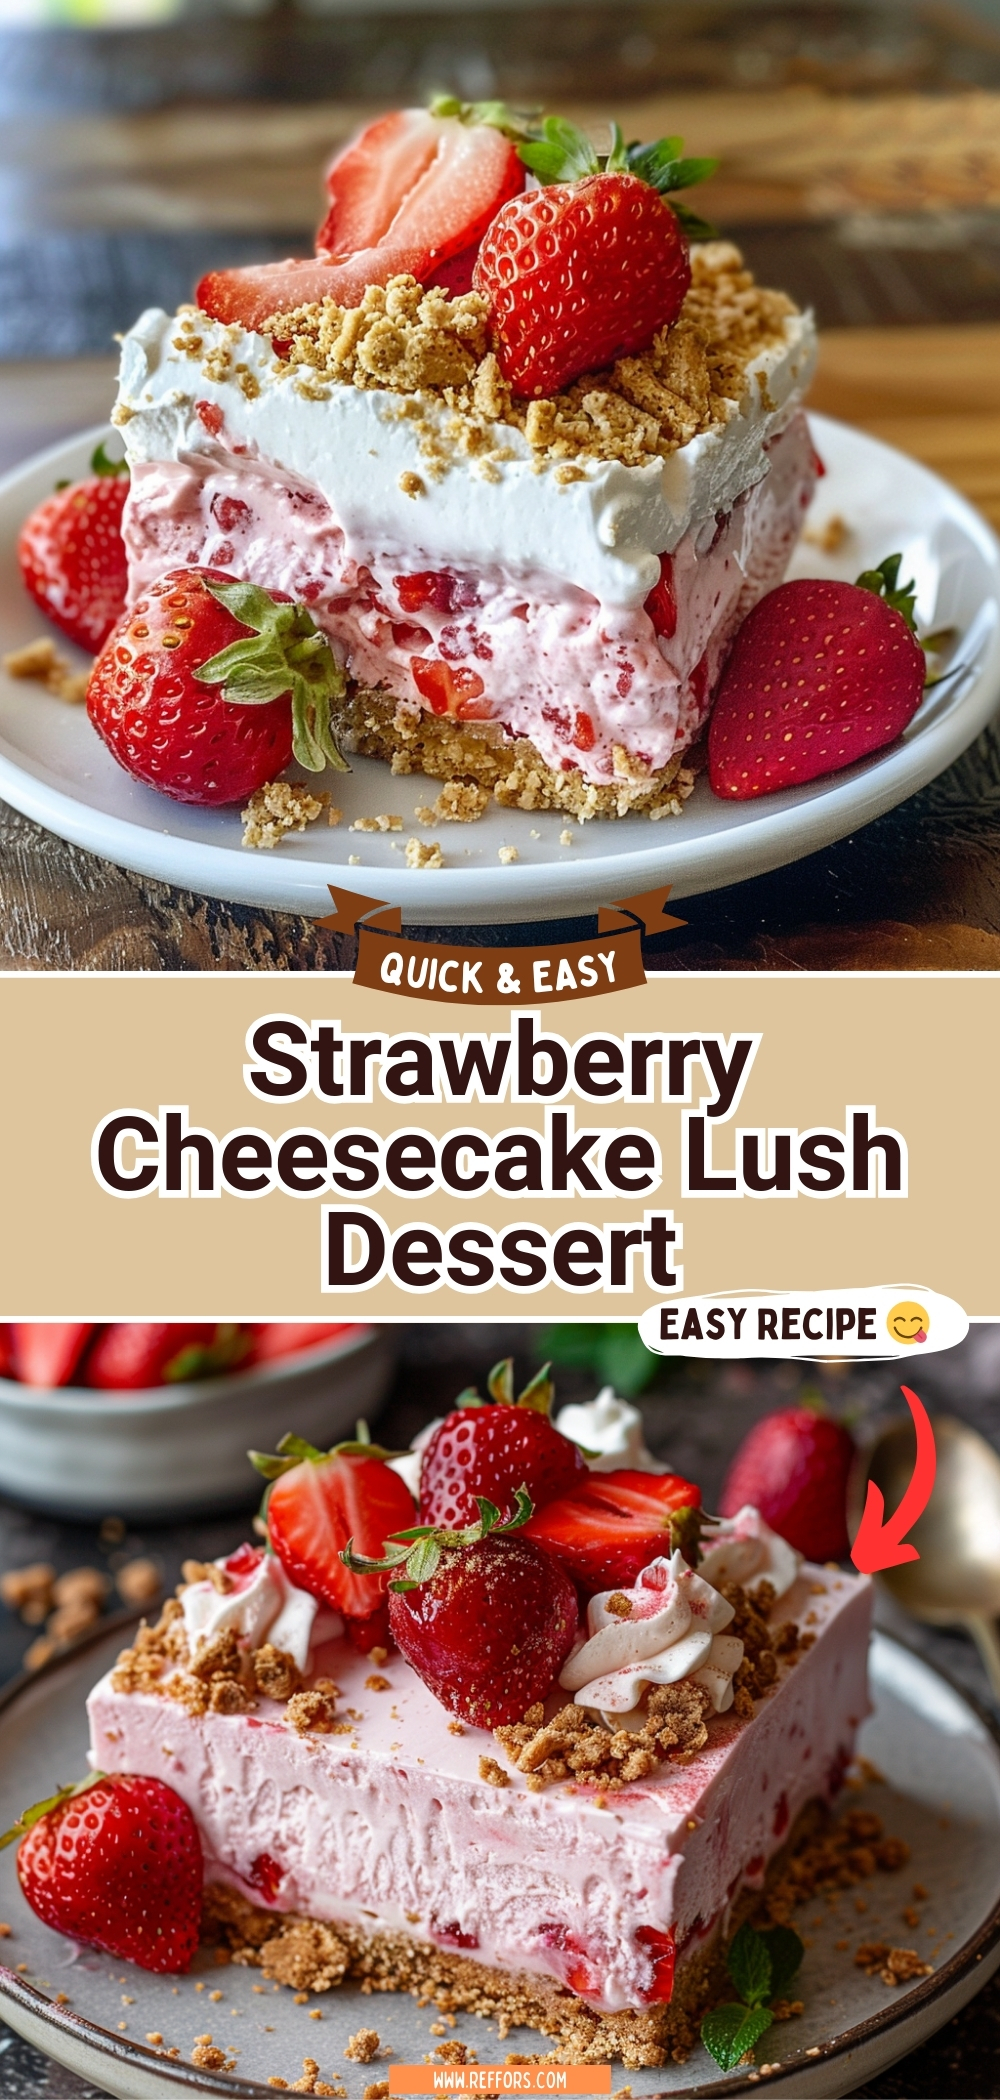 Strawberry Cheesecake Lush Dessert